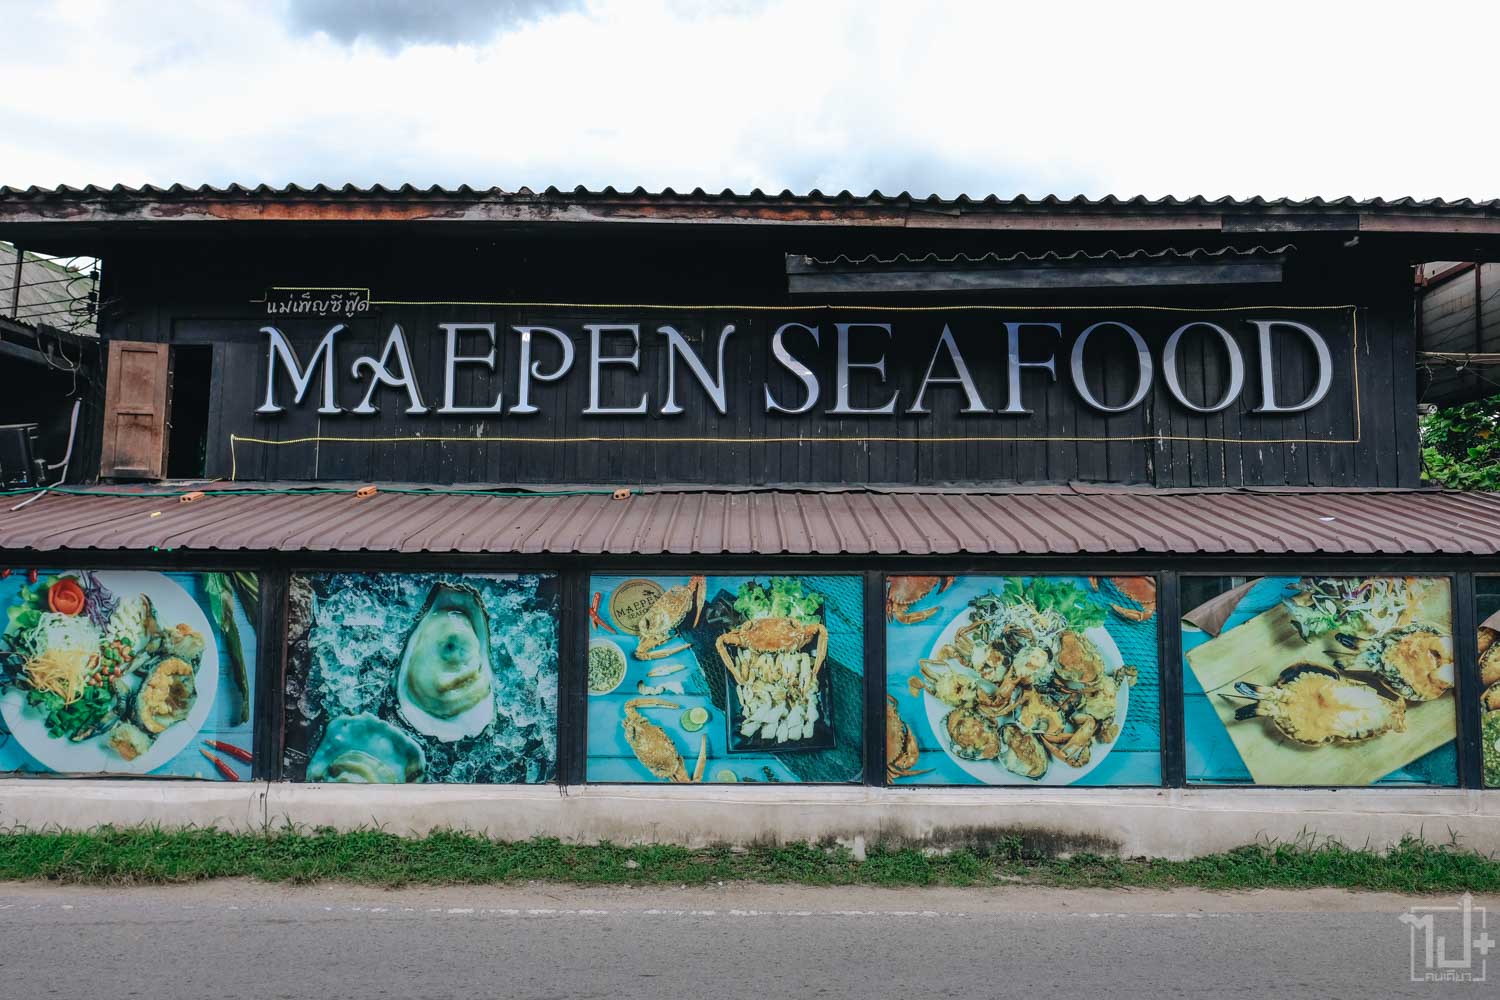 แม่เพ็ญซีฟู้ด ,ร้านอาหารทะเลเชียงใหม่ ,อาหทารทะเลสด ,ร้านอาหารเชียงใหม่ ,รีวิวเชียงใหม่ ,ร้านน่านั่ง ,กุ้งเผา ,MaepenSeafood ,Chiangmai